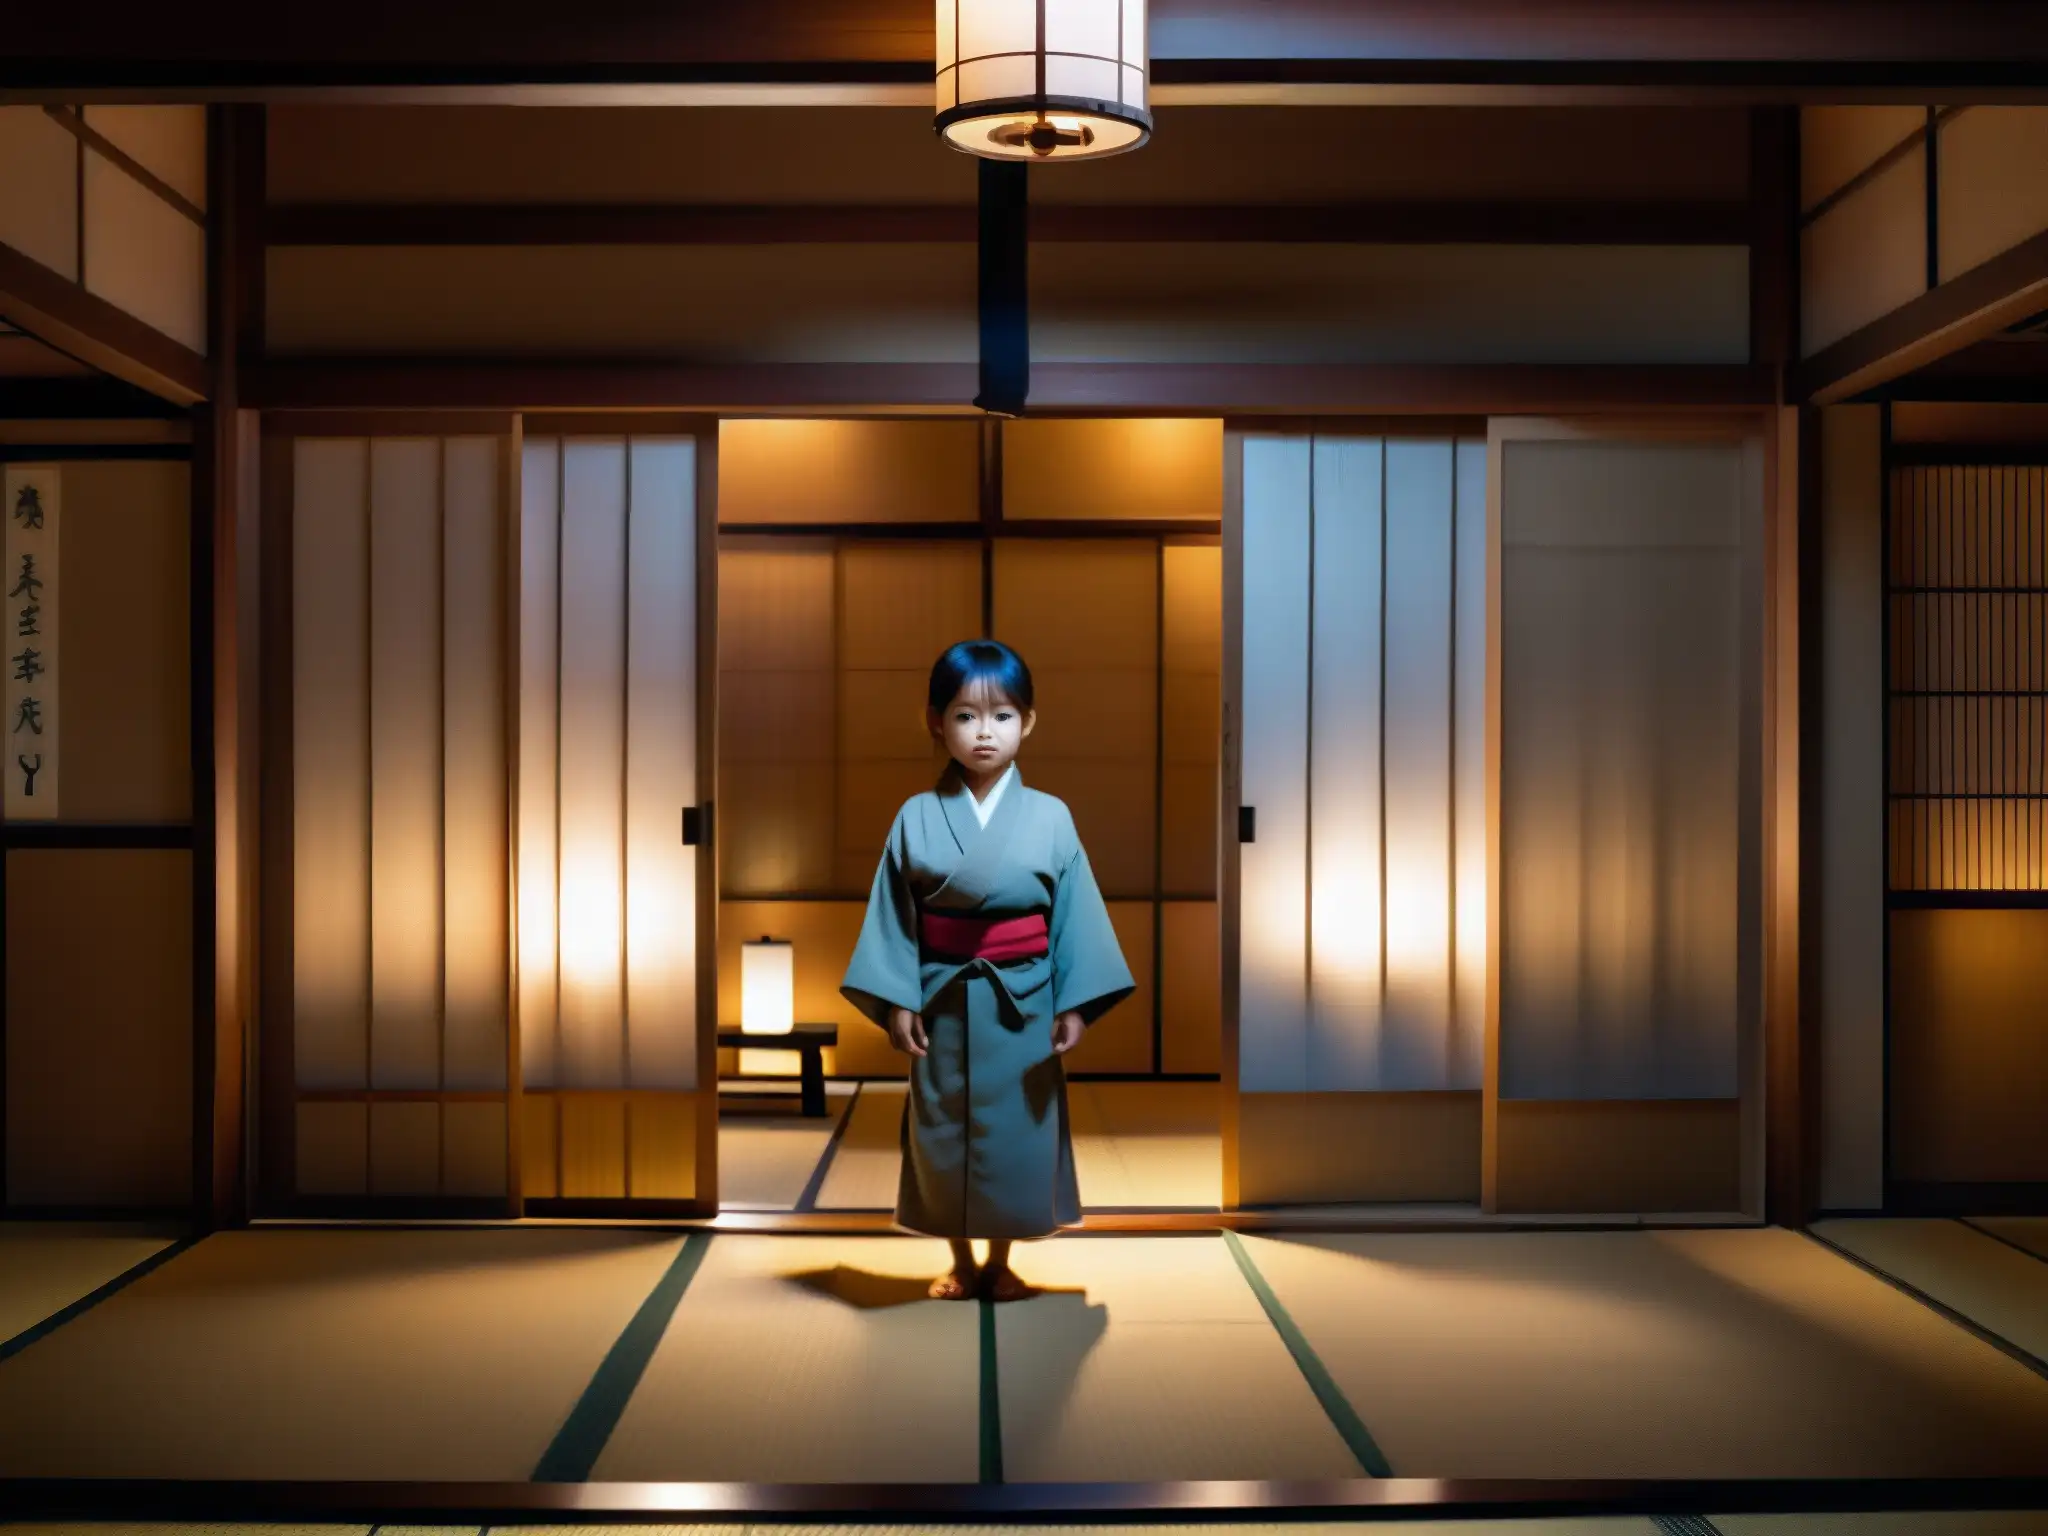 En una habitación tradicional japonesa, se ve la figura fantasmal de un niño rodeado de objetos flotantes, con una luz misteriosa